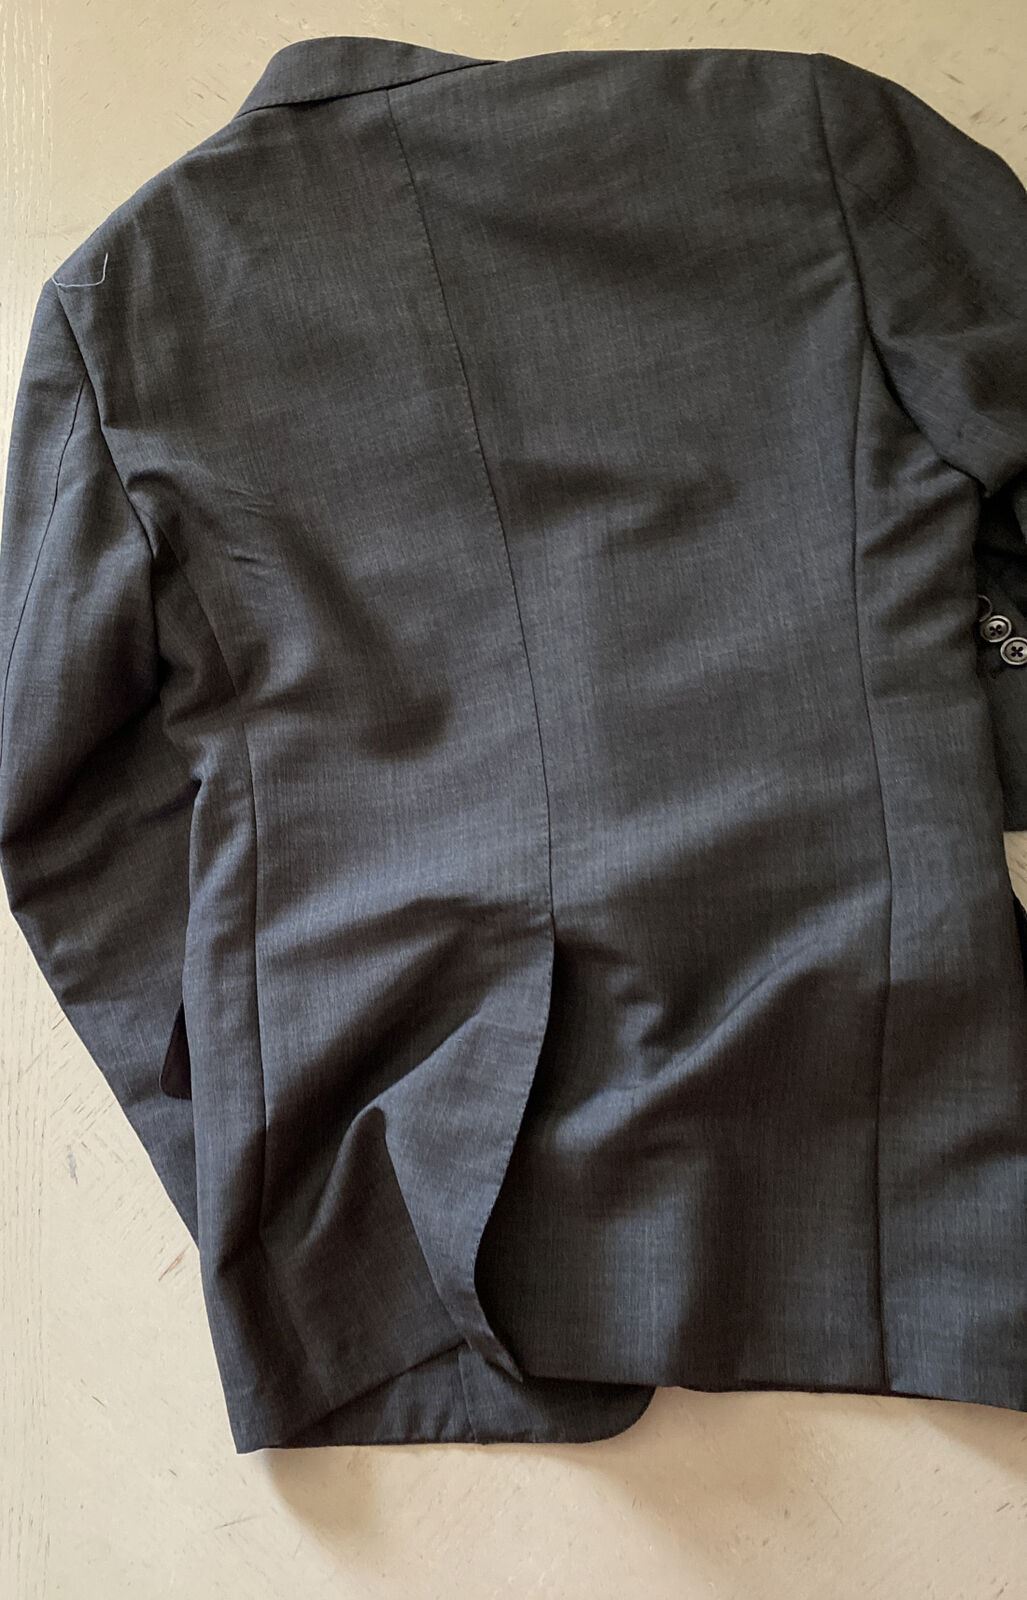 NWT $3970 TOM FORD Мужская куртка Giacca Блейзер DK Серый 36 США/46 ЕС Швейцария